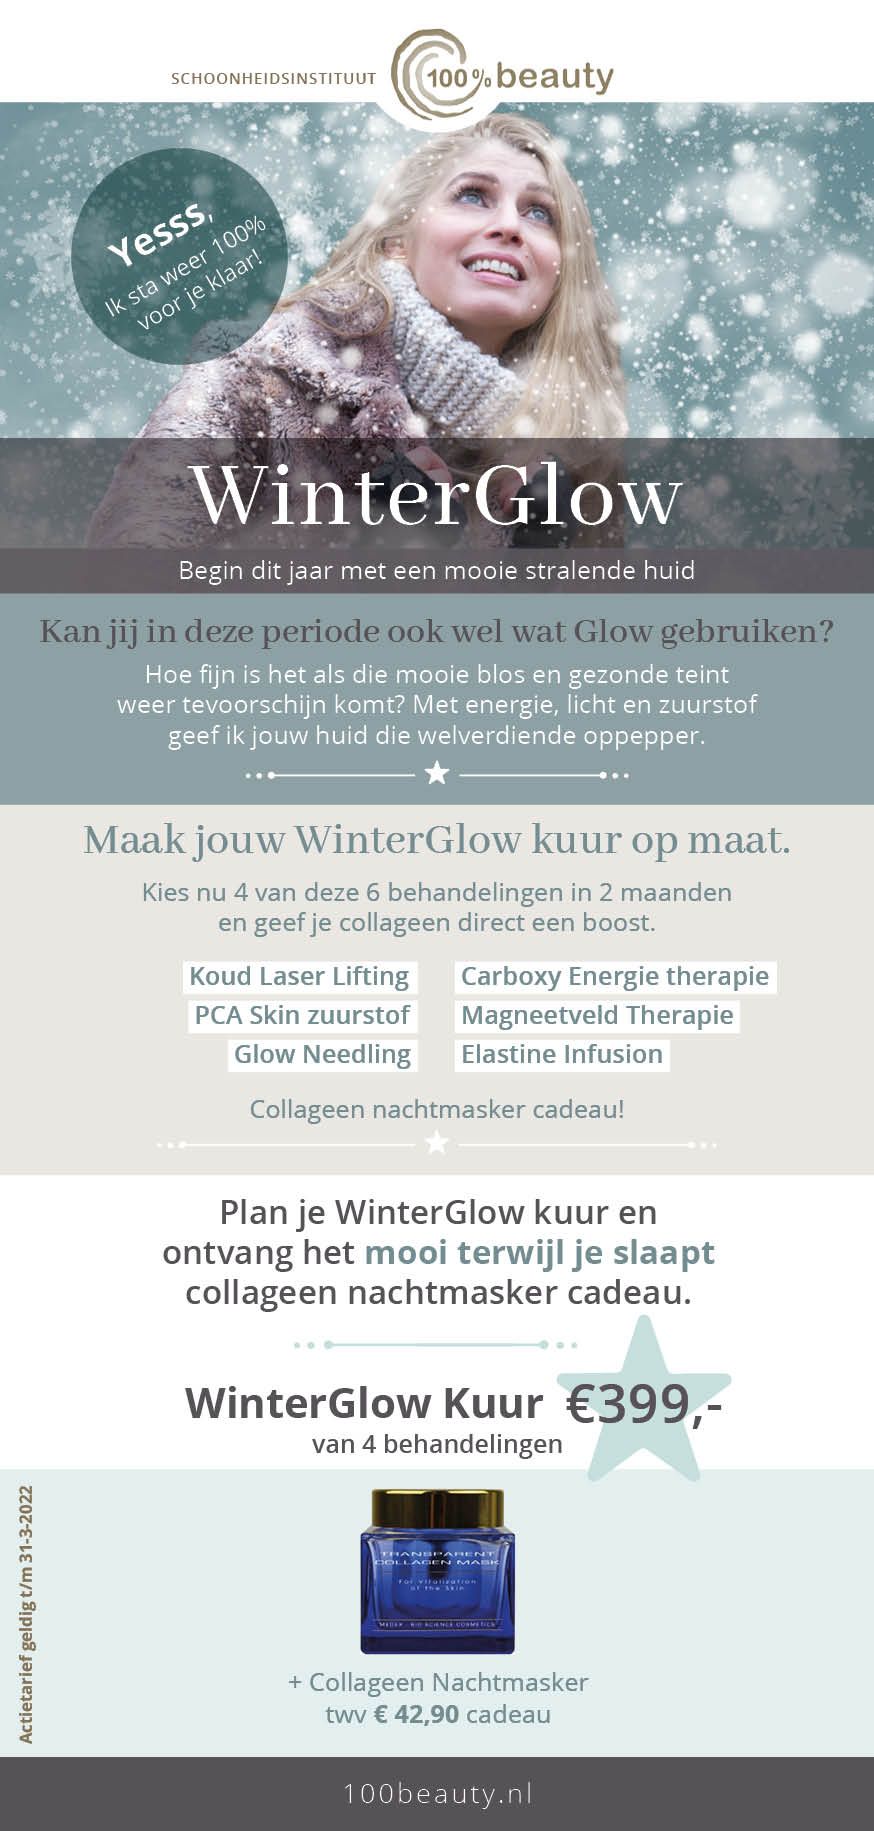 WinterGlow